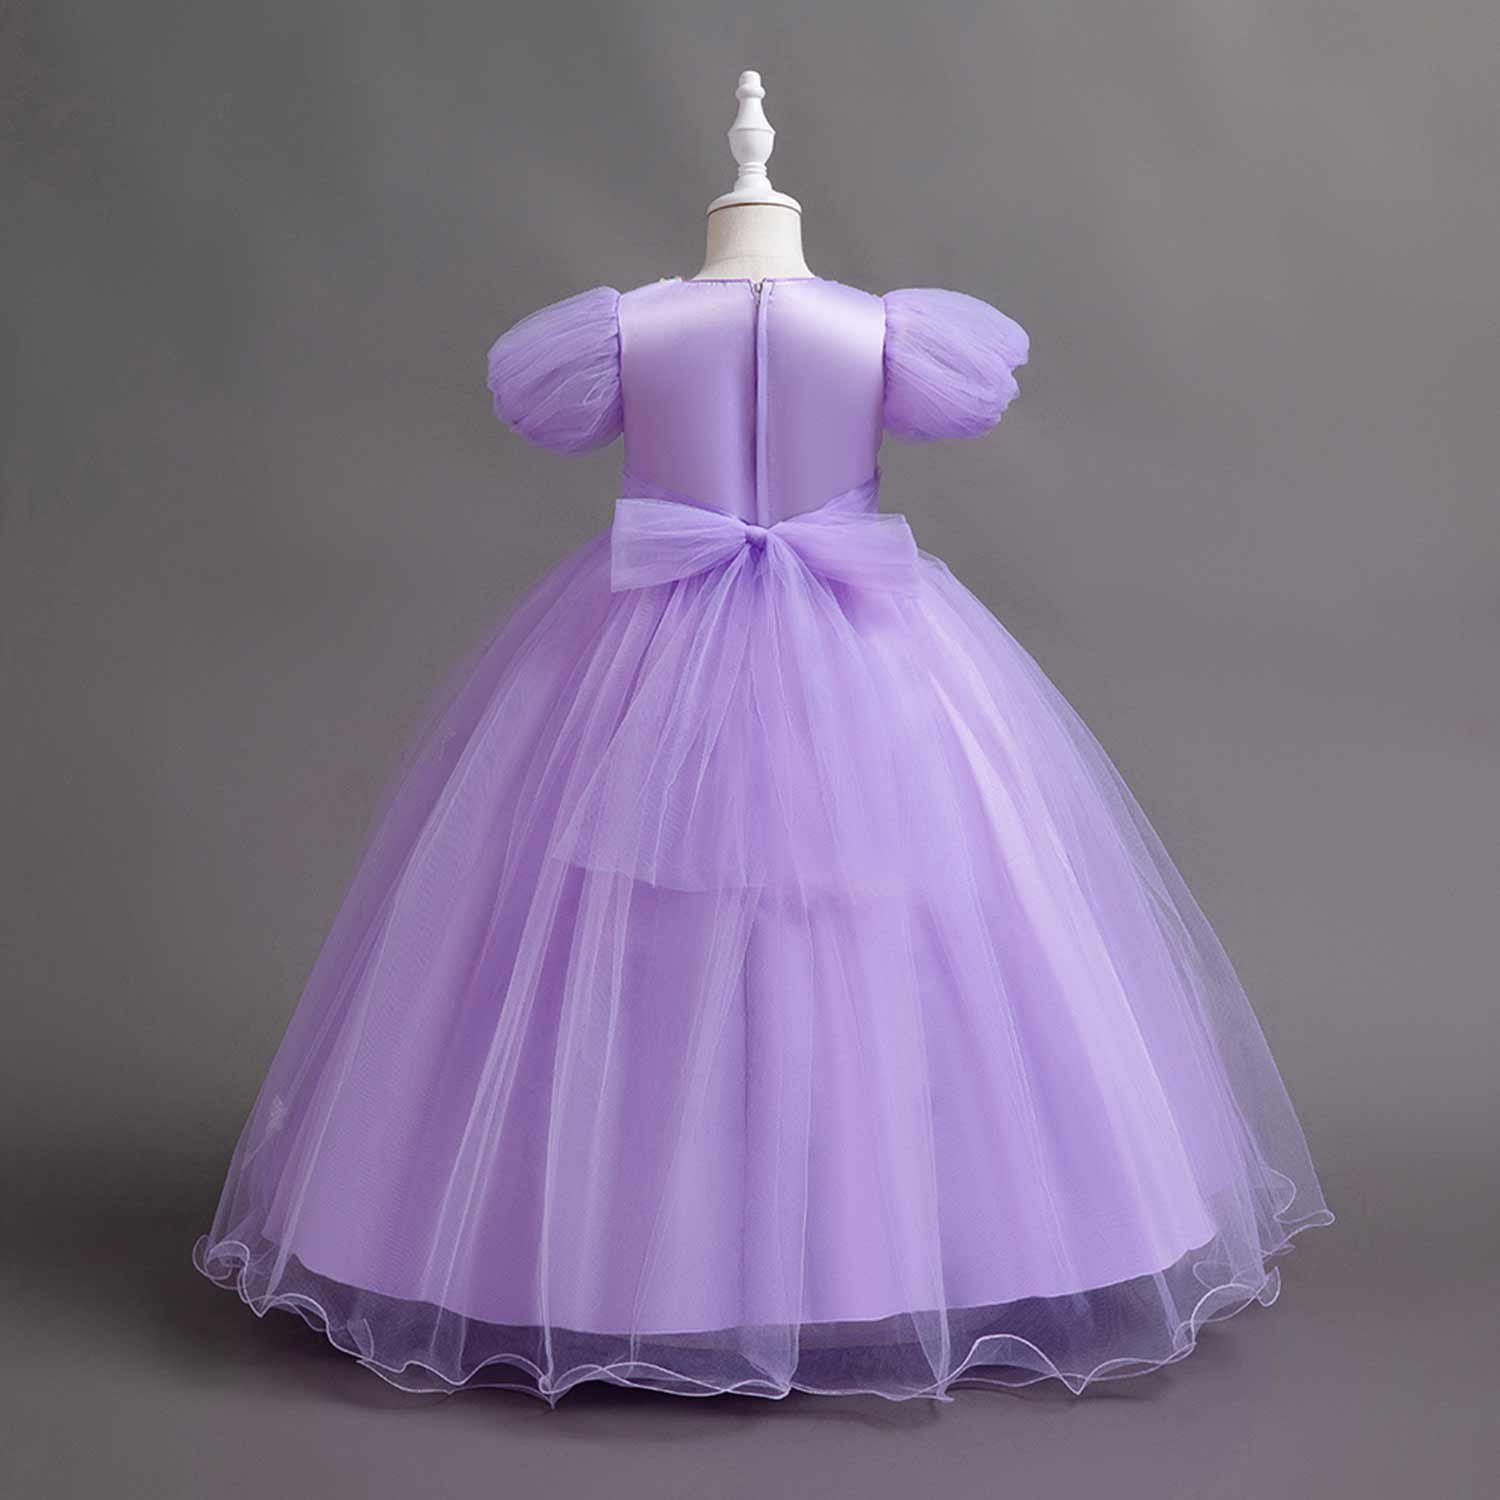 Mädchen Geburtstagsparty Daisred Lila Tüllkleider Prinzessinnenkleider Abendkleid